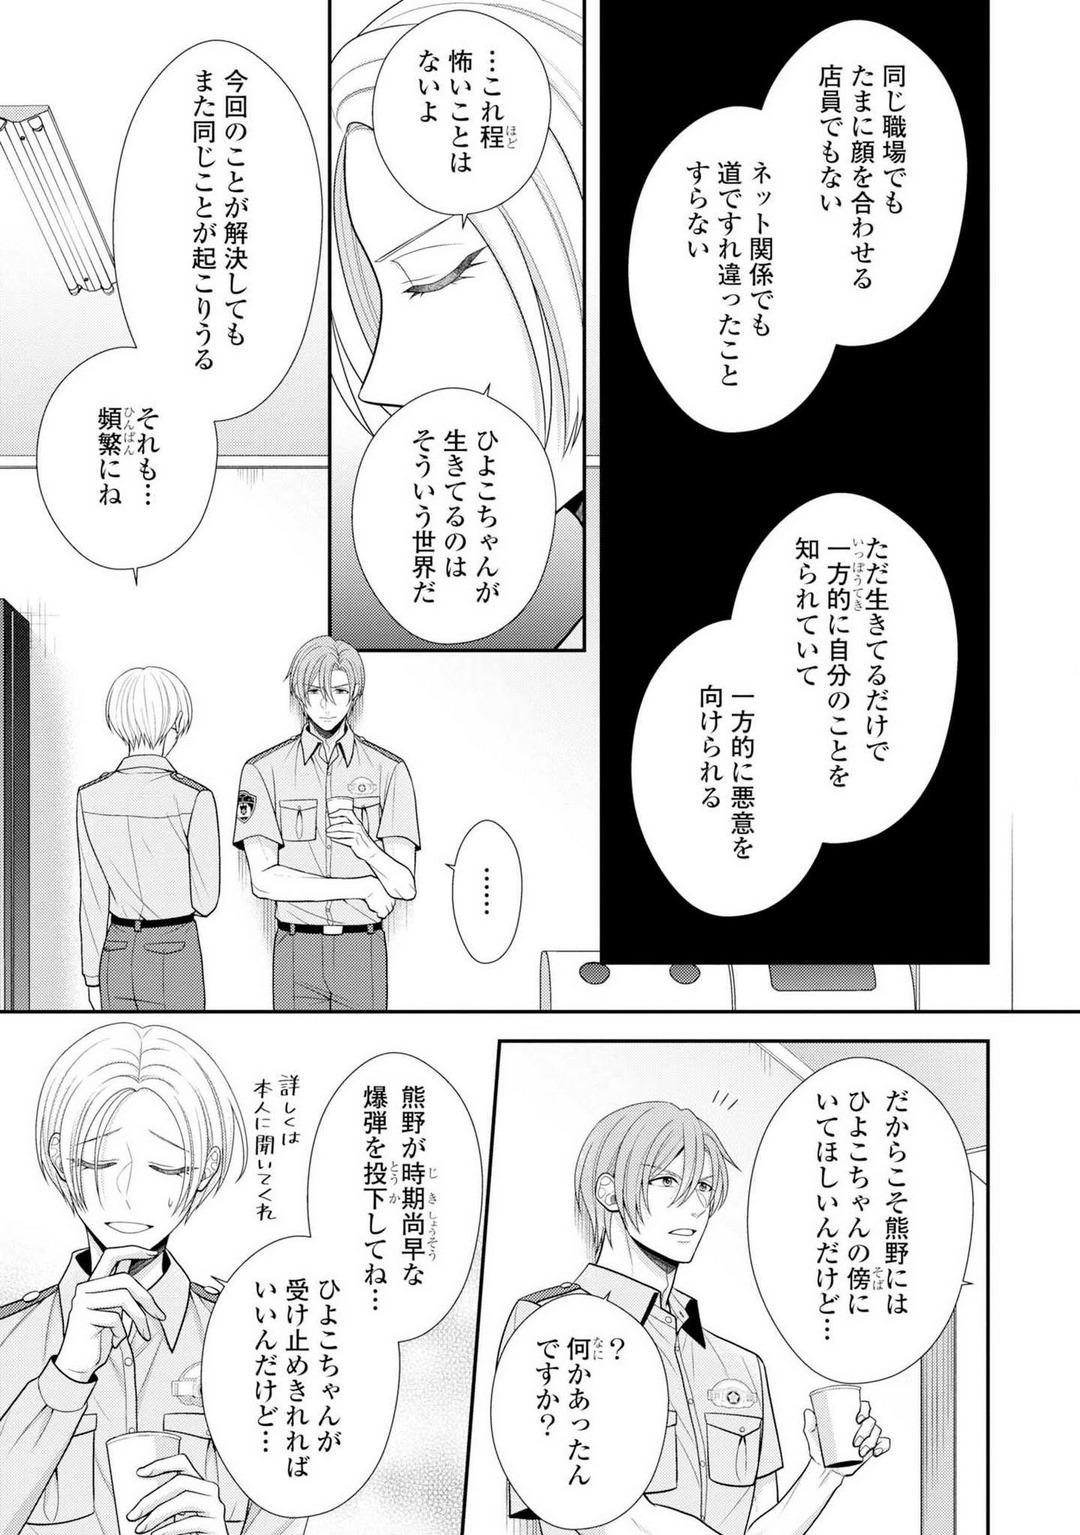 Nipples Sono Keisatsukan, Tokidoki Yajuu! 19-36 Fitness - Page 8